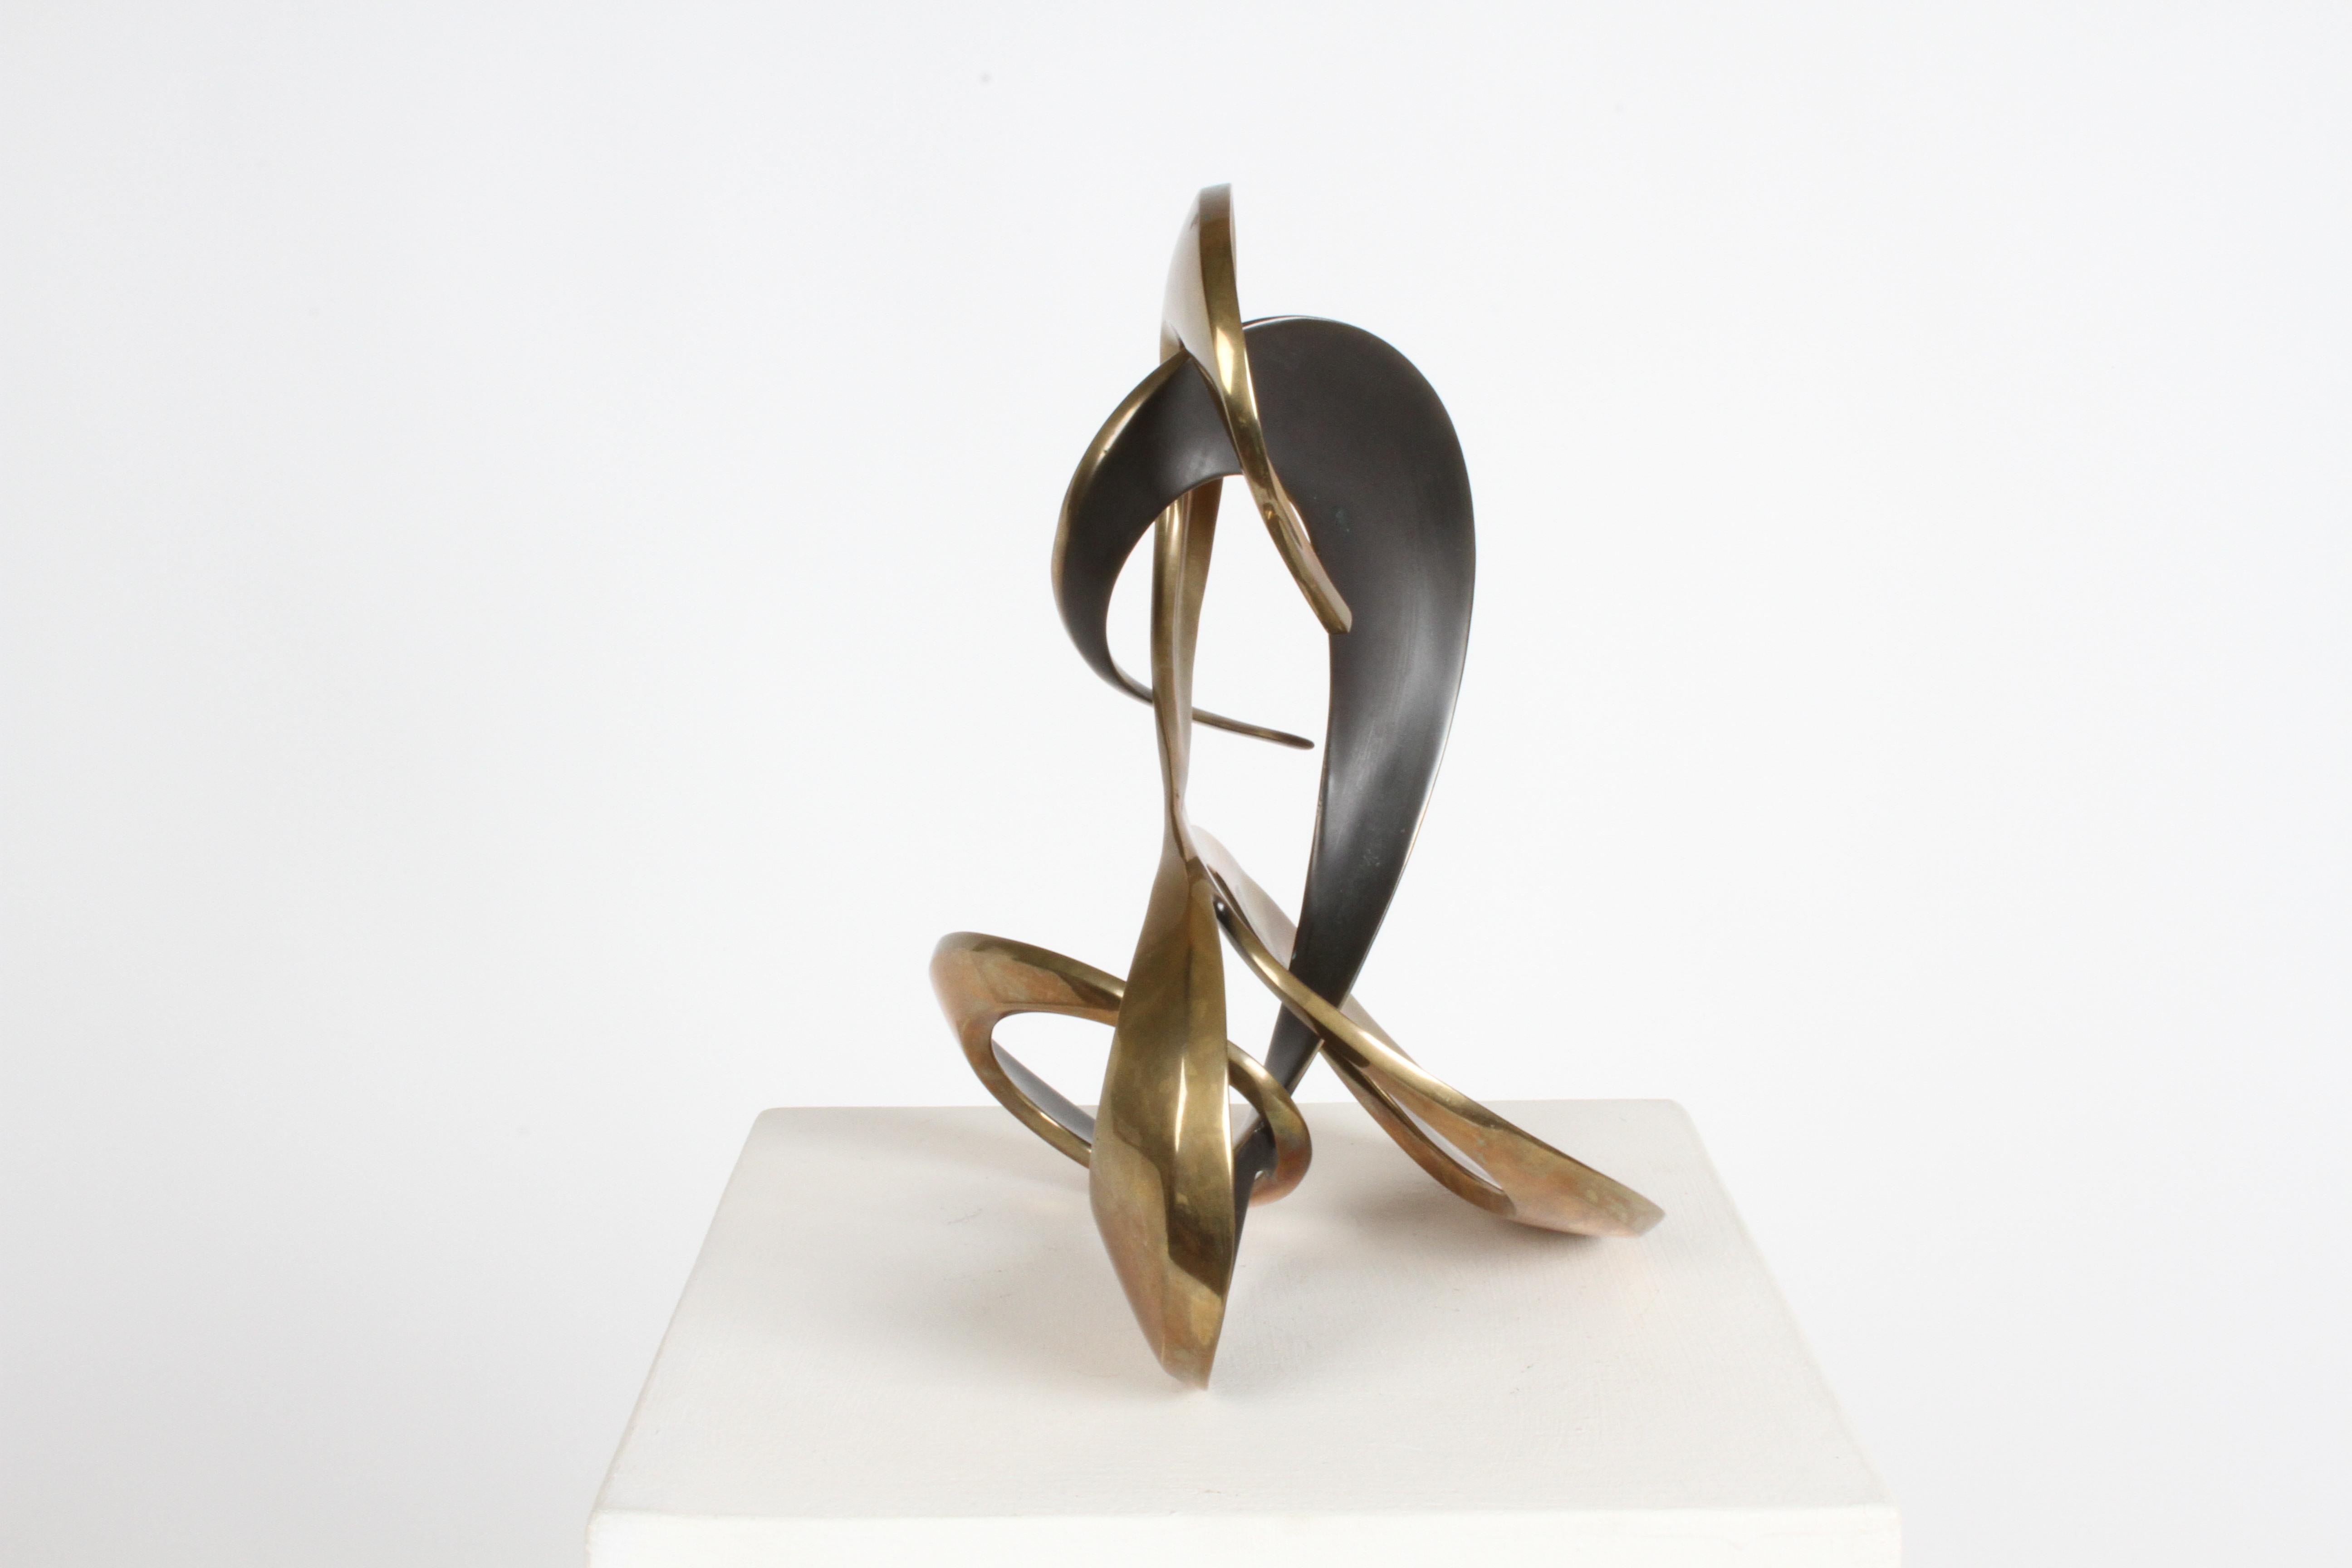 Mid-Century Modern Modernist 80s Bronze Abstract Free Form Sculpture by Artist Bob Bennett #80/100